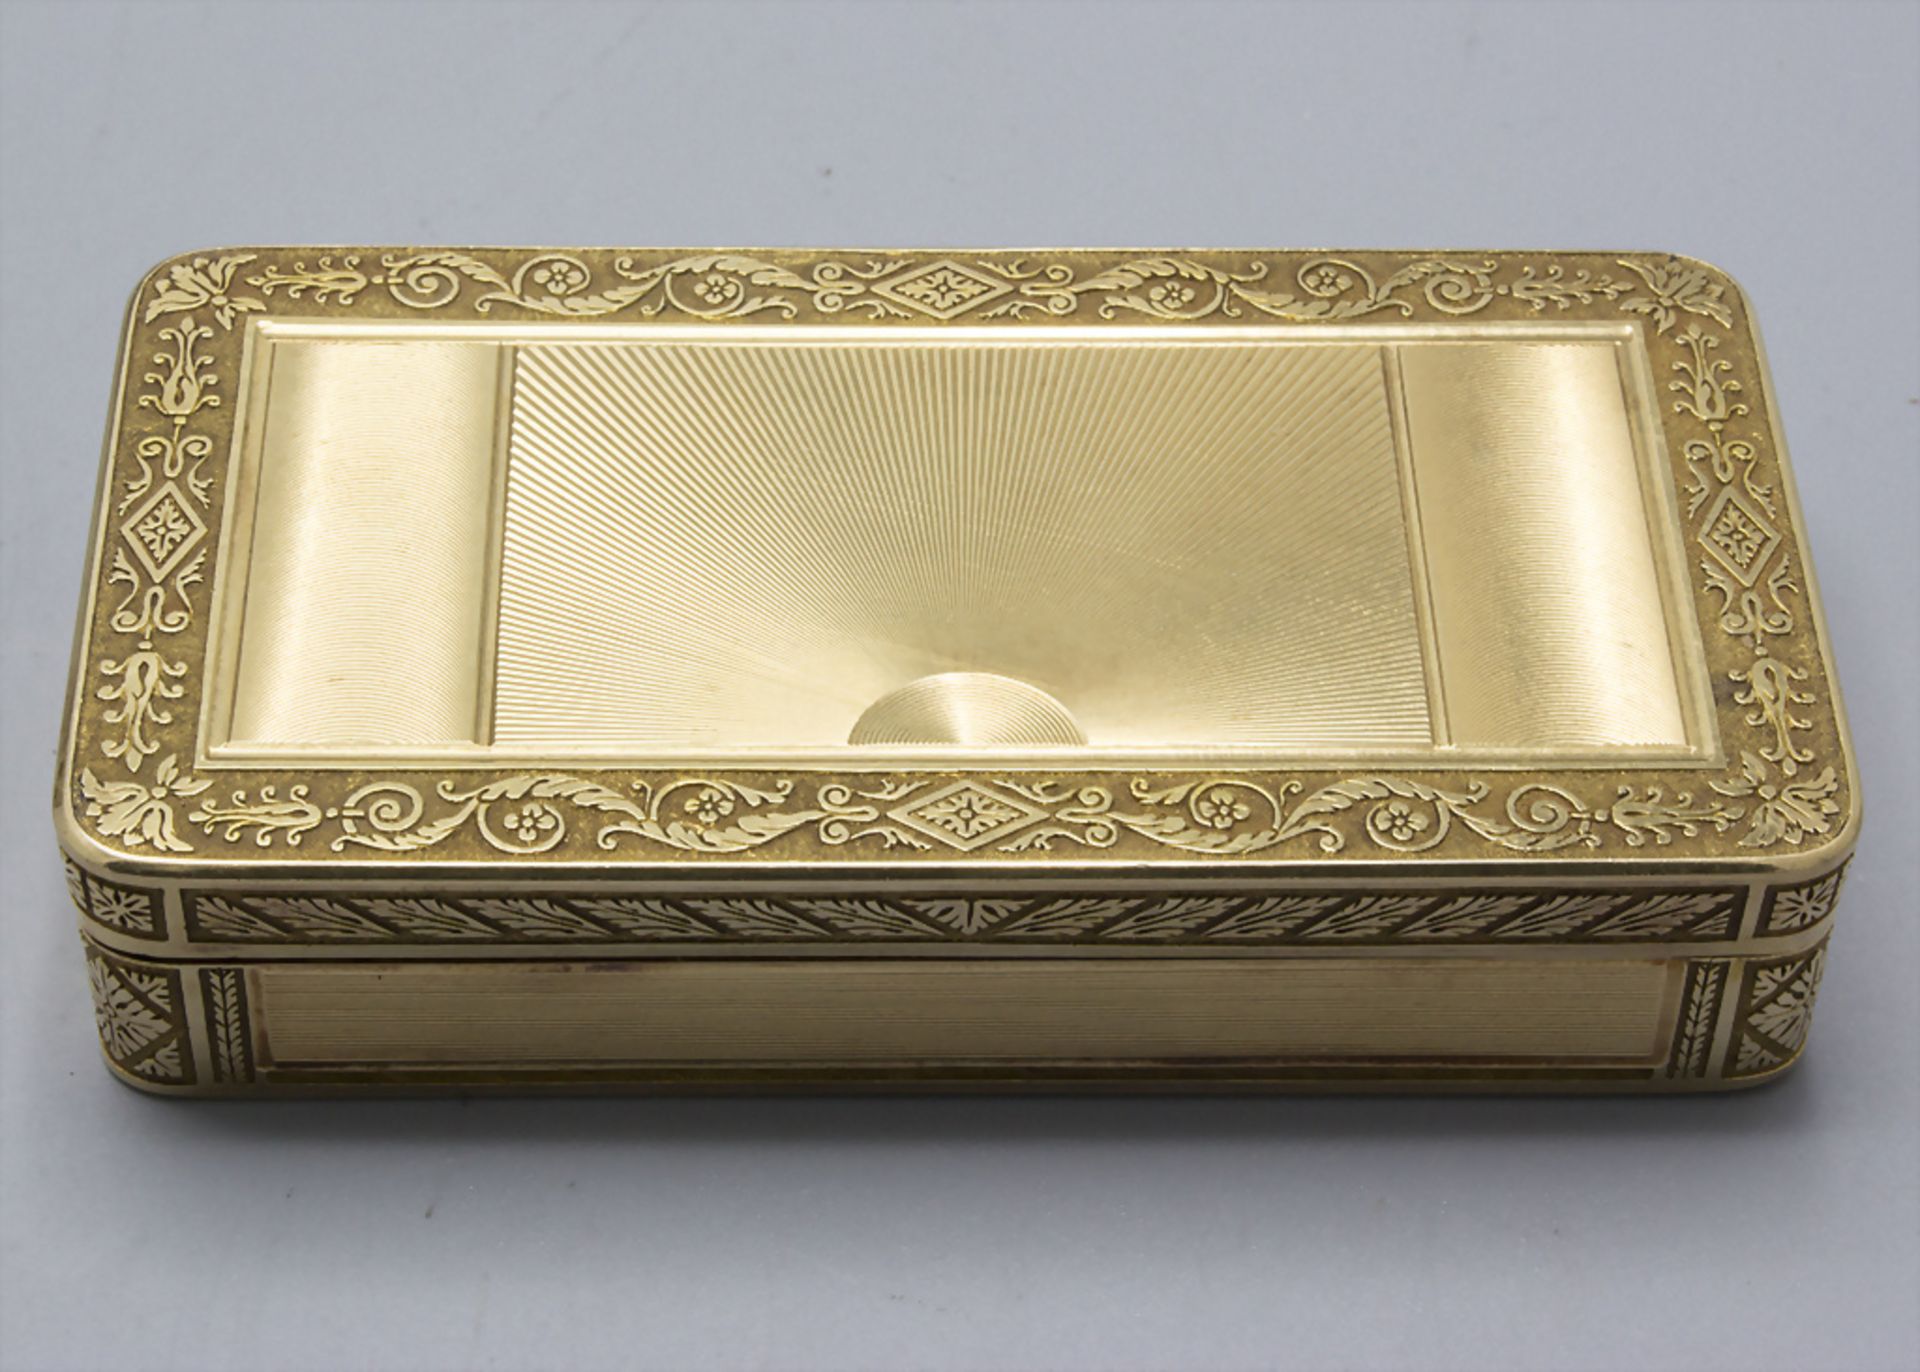 Tabatiere / Schnupftabakdose / An 18k gold snuff box, Genf / Geneve, um 1790 - Bild 2 aus 13